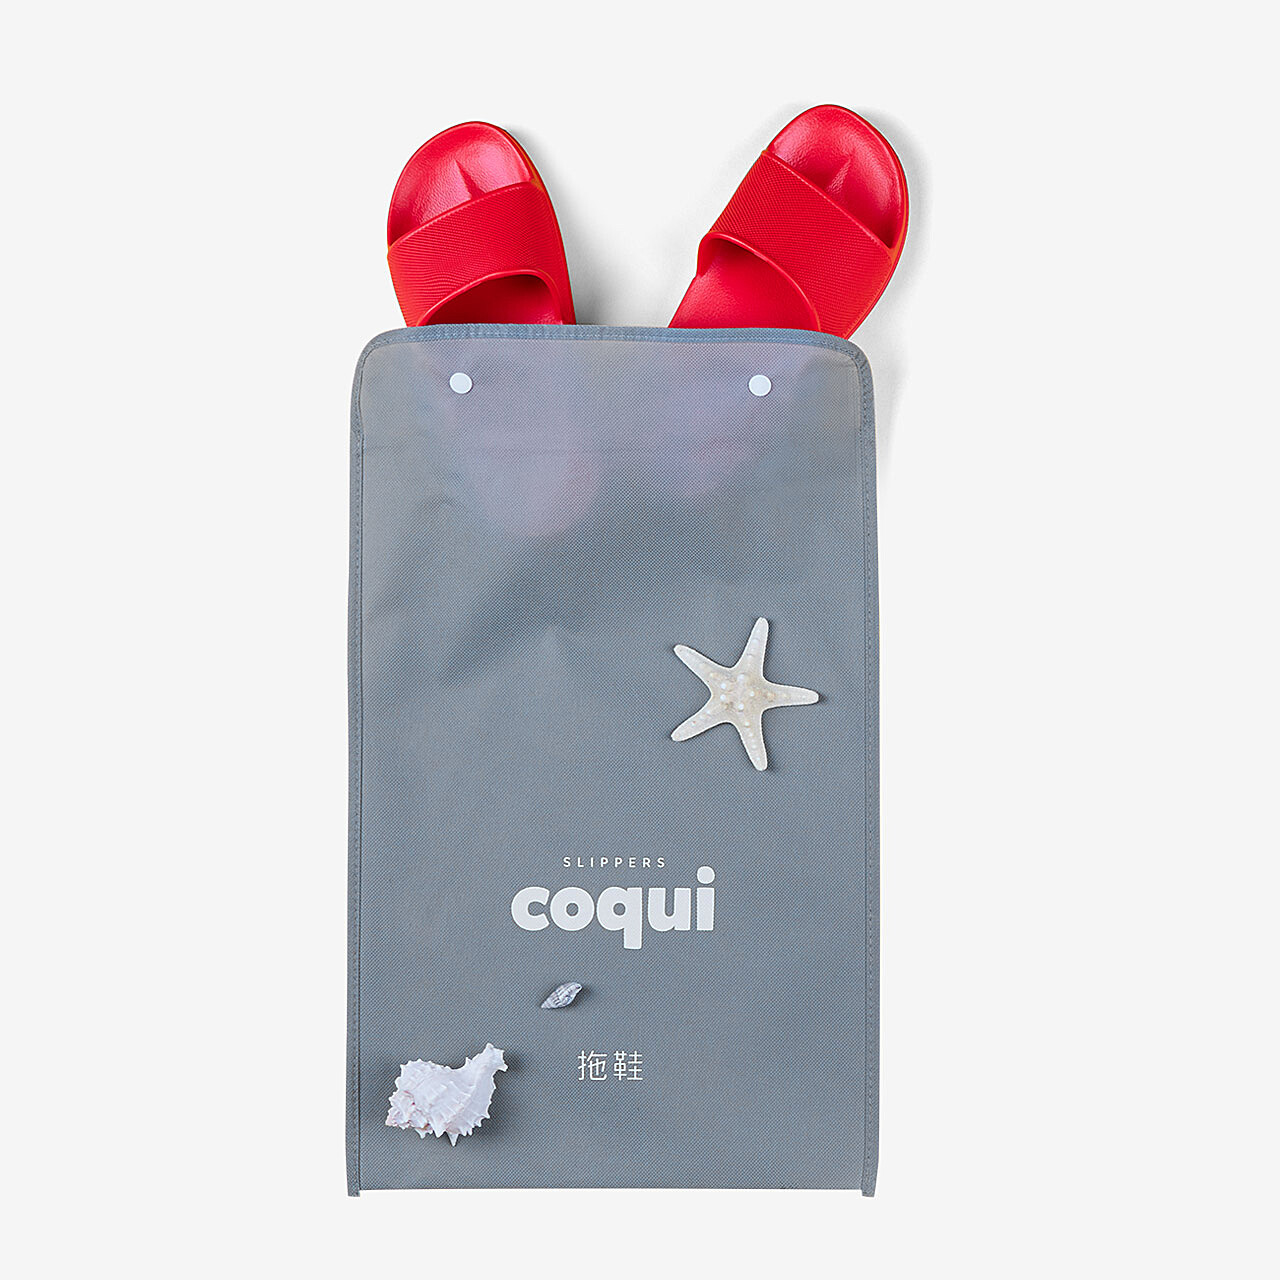 Dárky a doplňky COQUI COQUI travel bag M mix